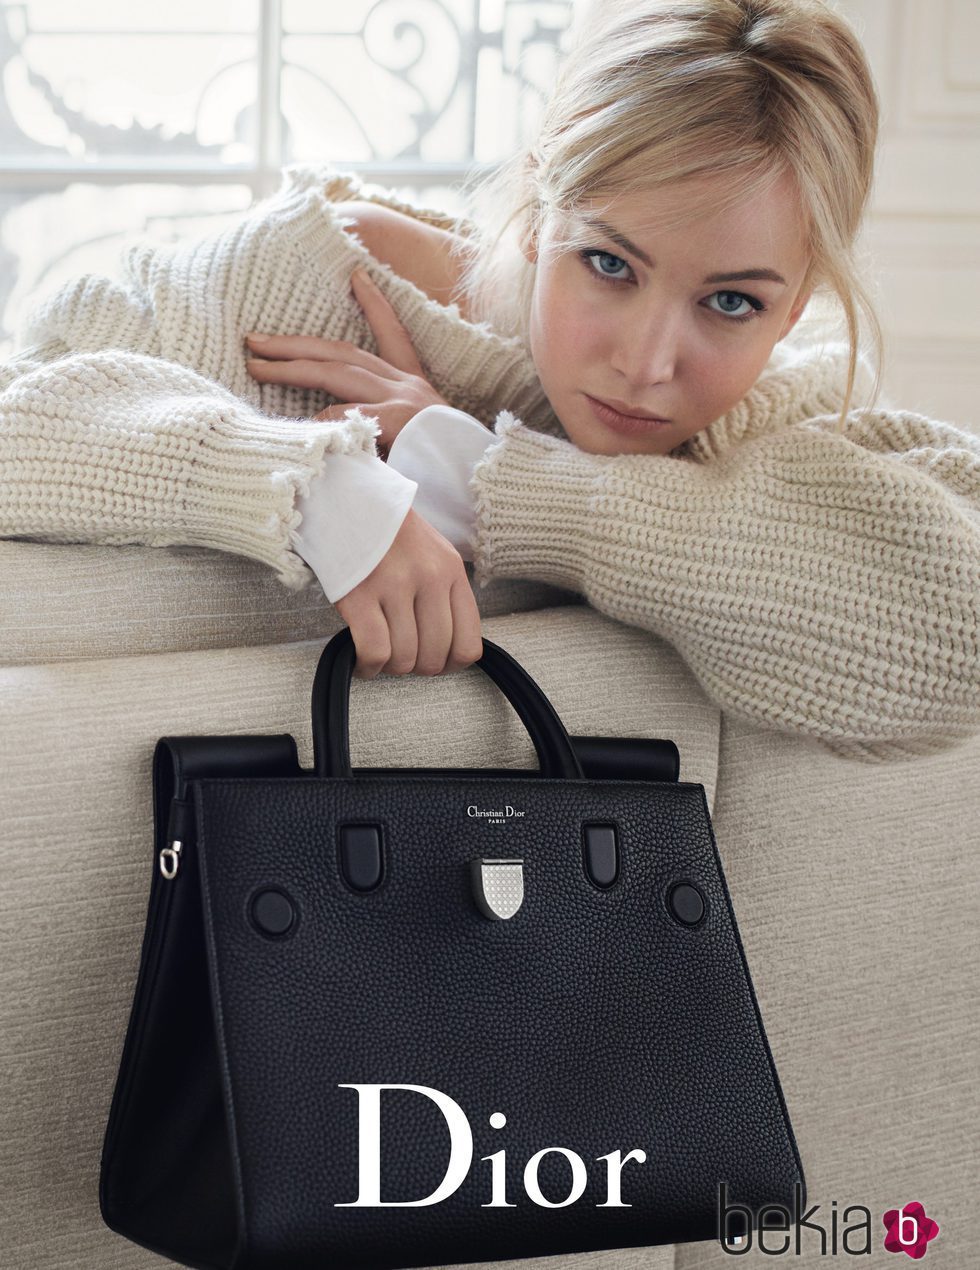 jennifer Lawrence, musa de Dior, en su nueva campaña primavera/verano 2016